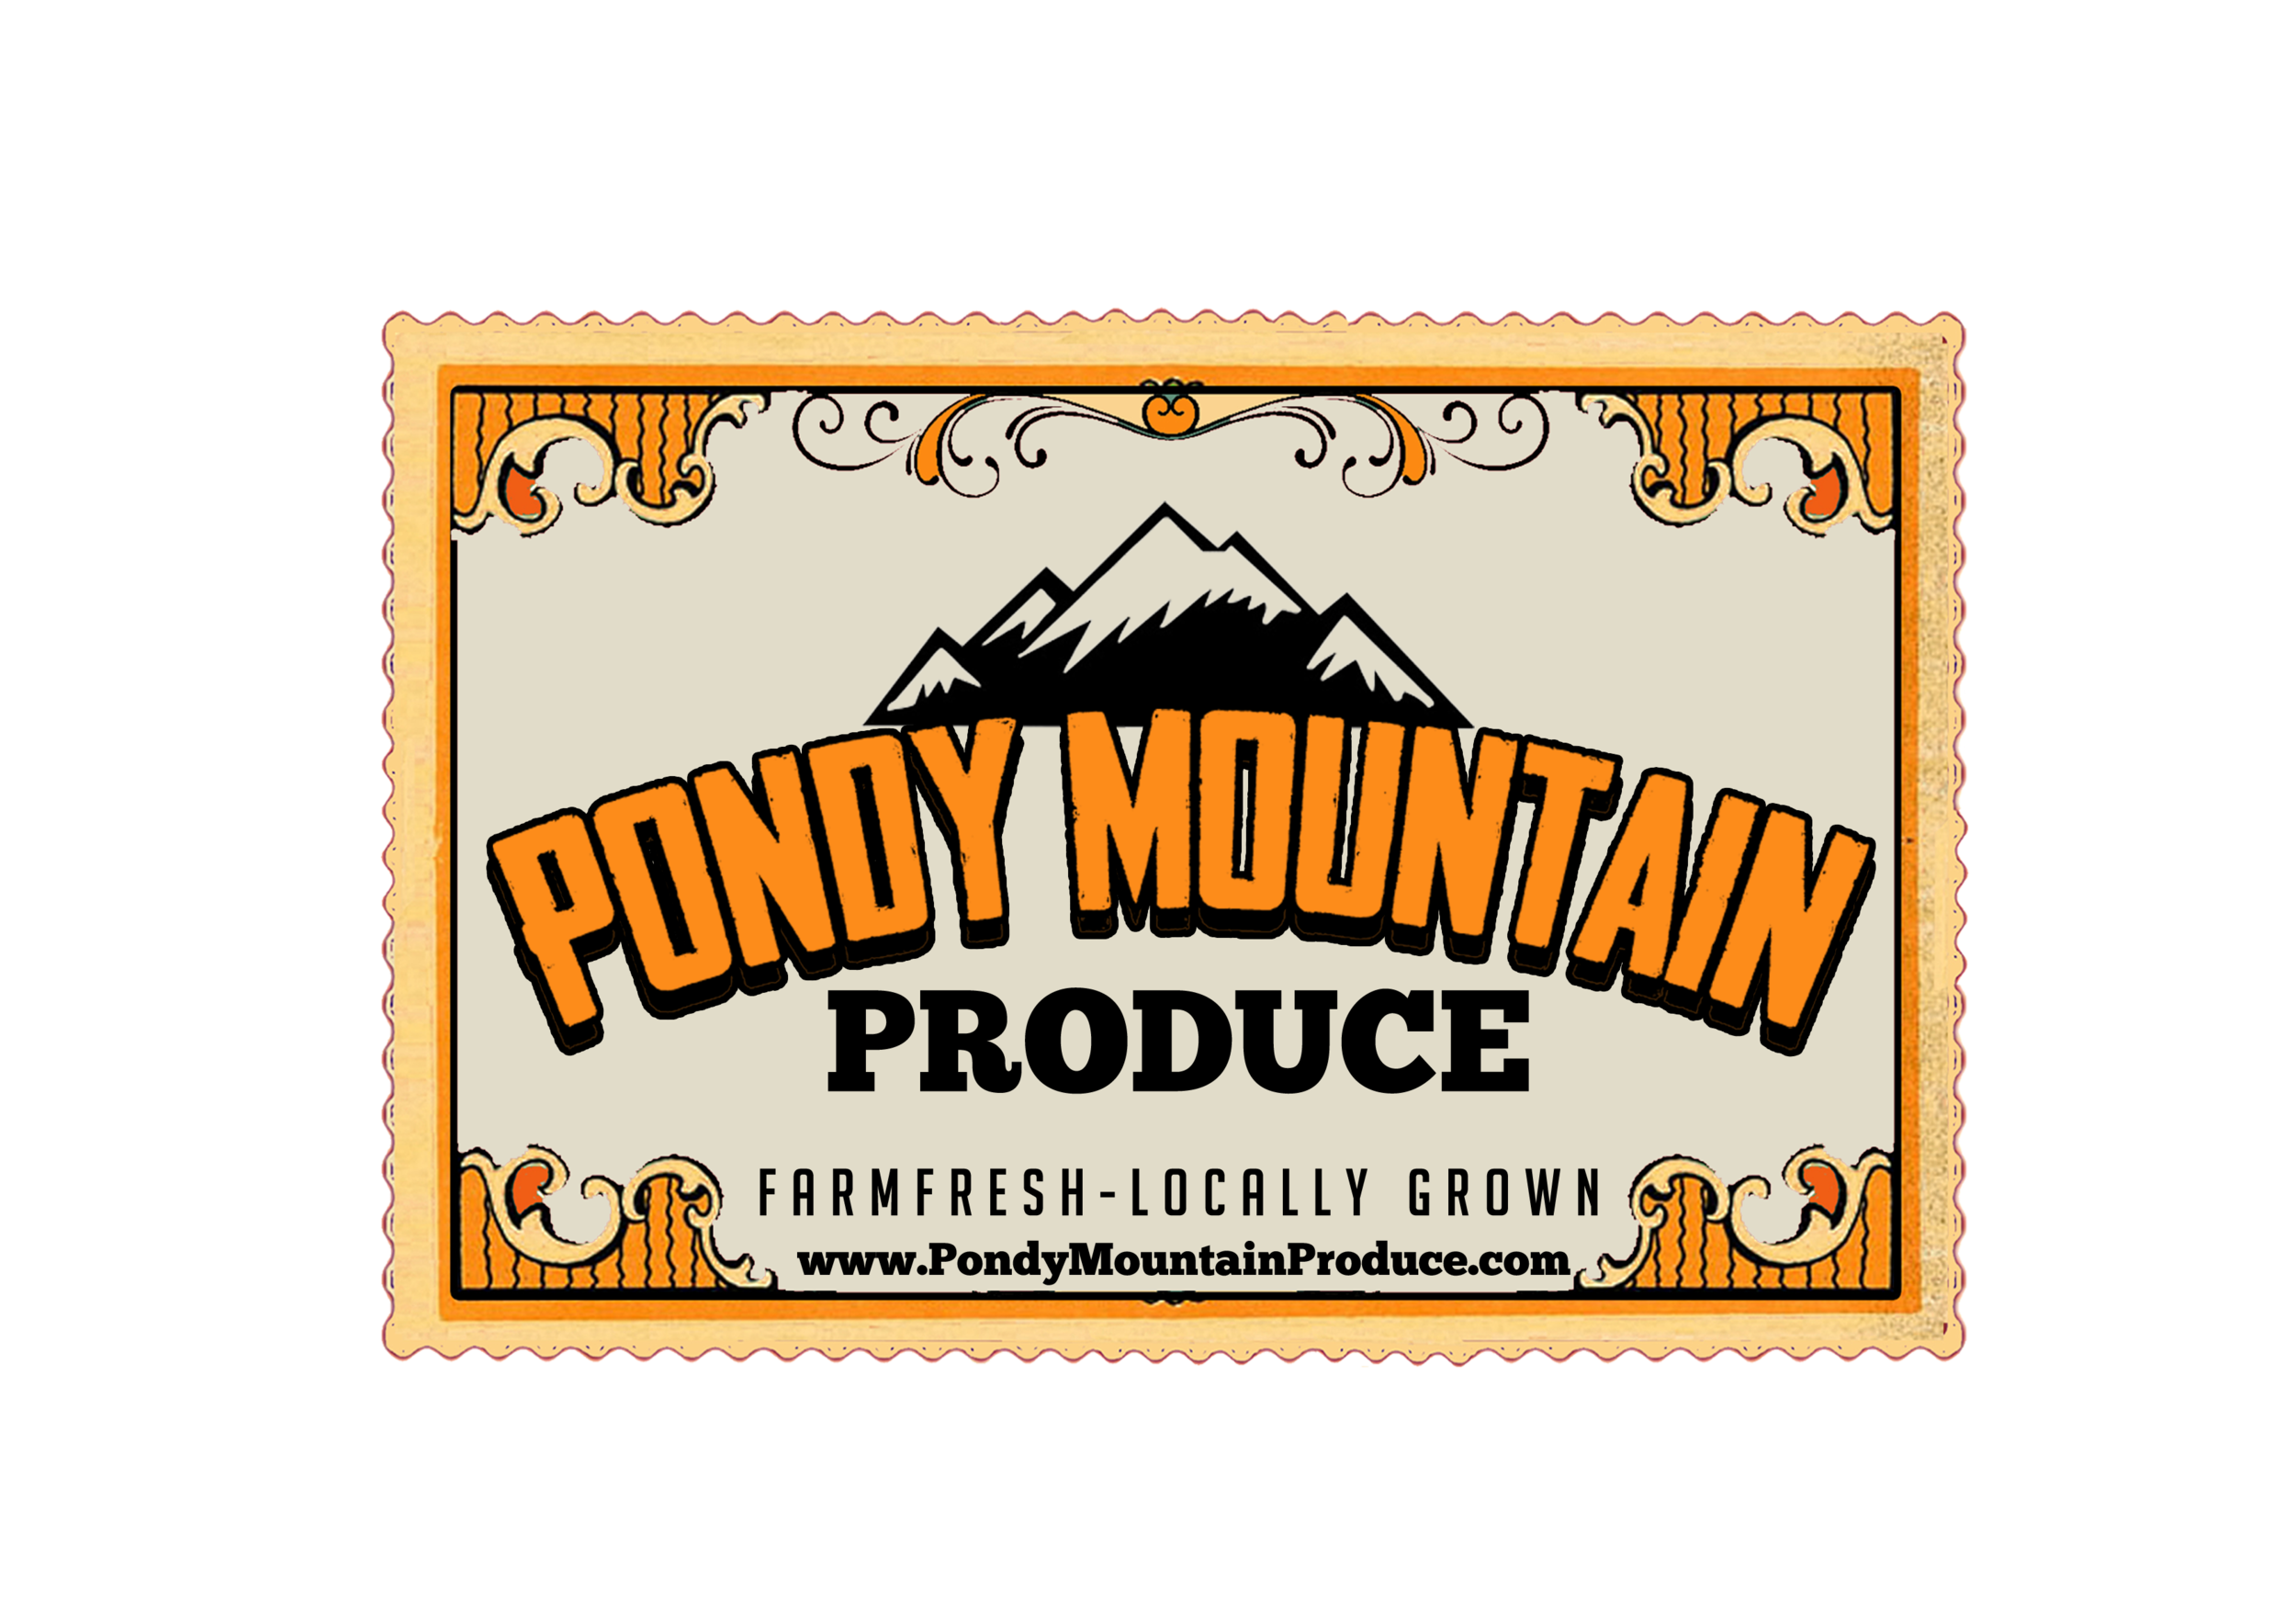 Pondy Mountain Produce